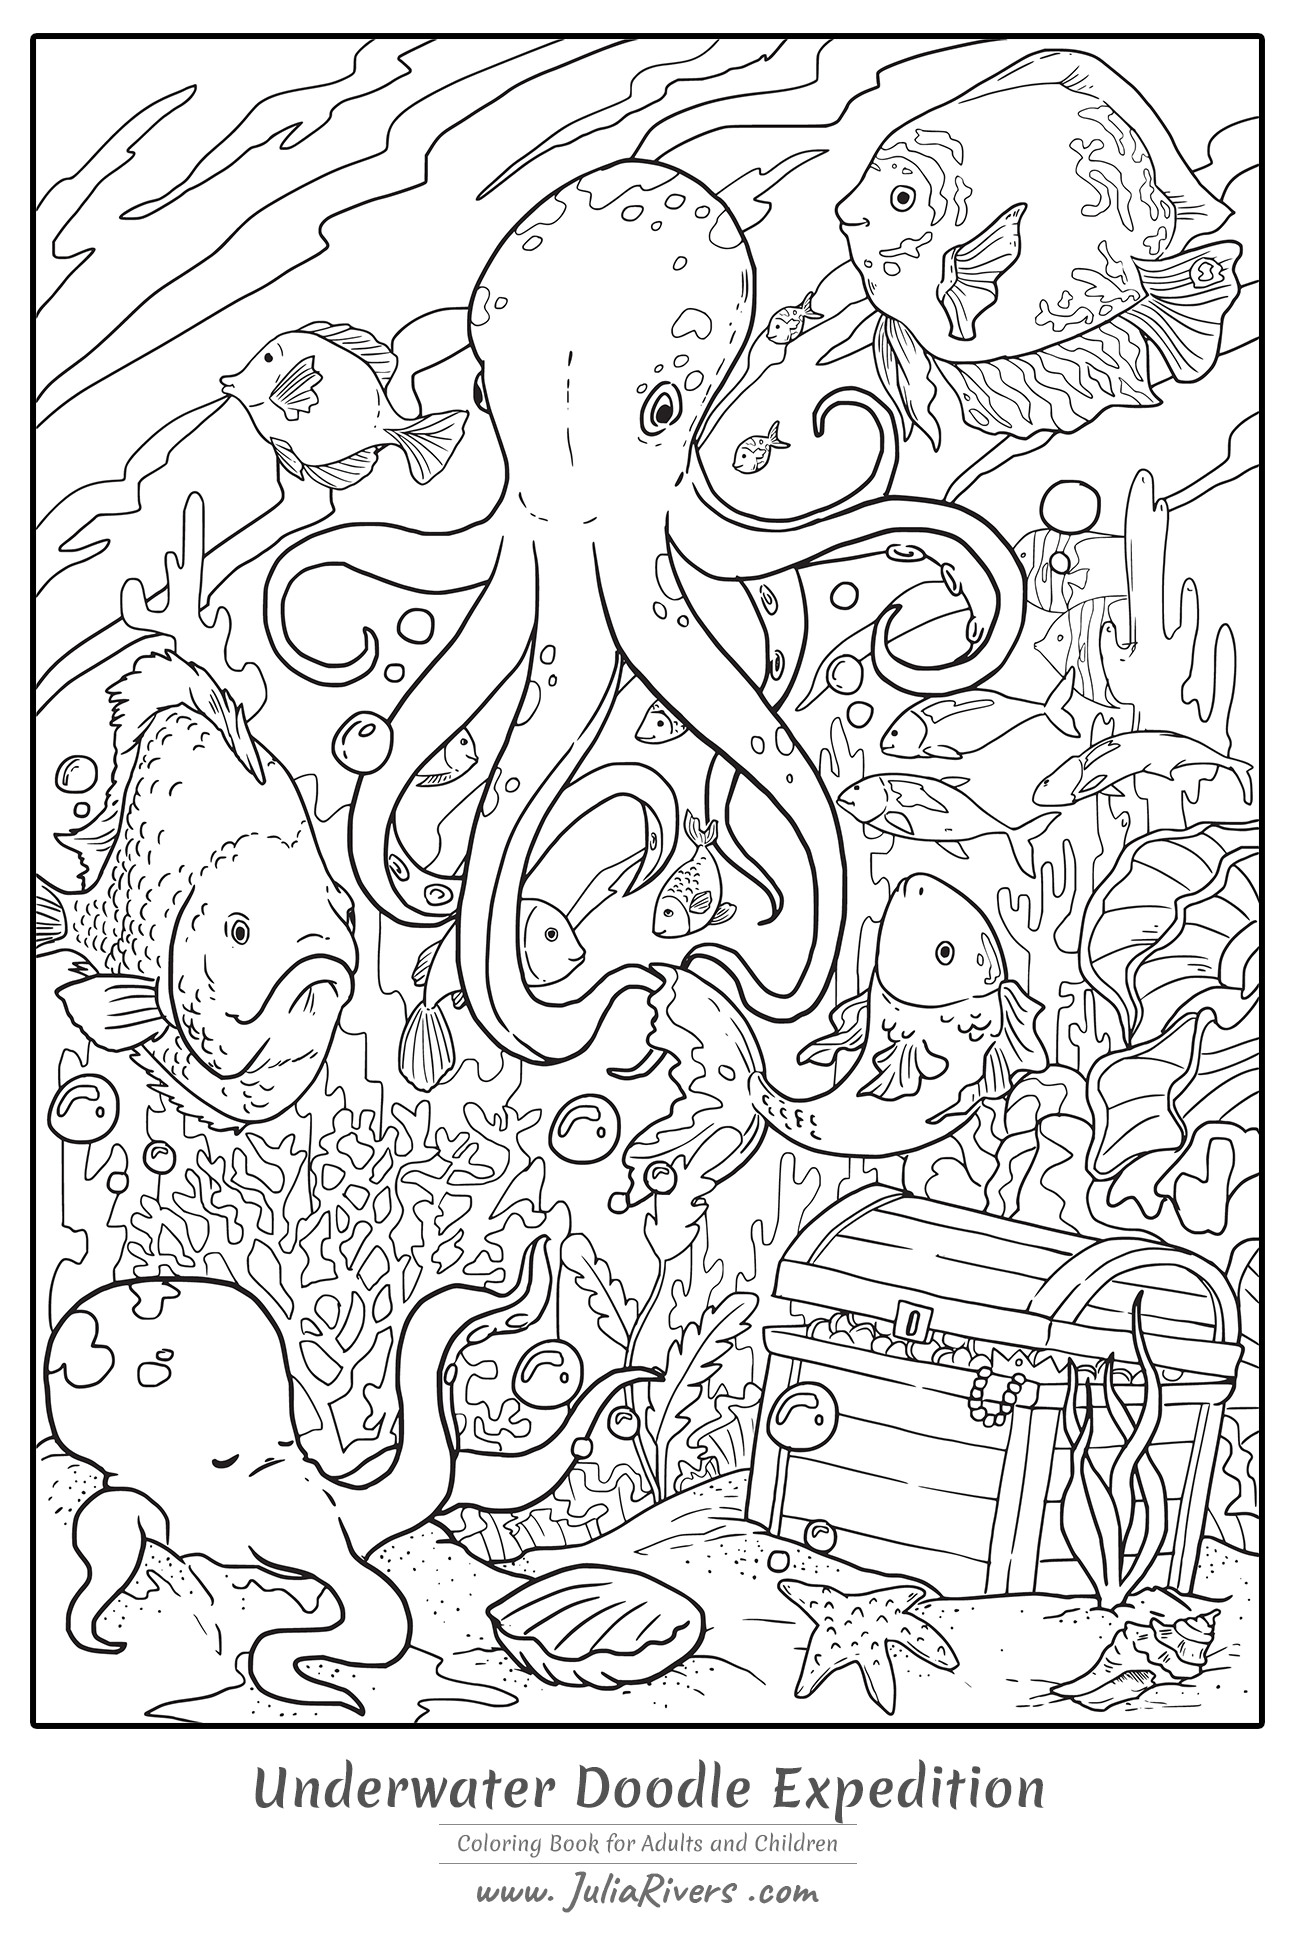 'Expedição subaquática Doodle' : Magnífica página para colorir representando um polvo gigante no fundo do mar, com peixes, corais e um tesouro misterioso